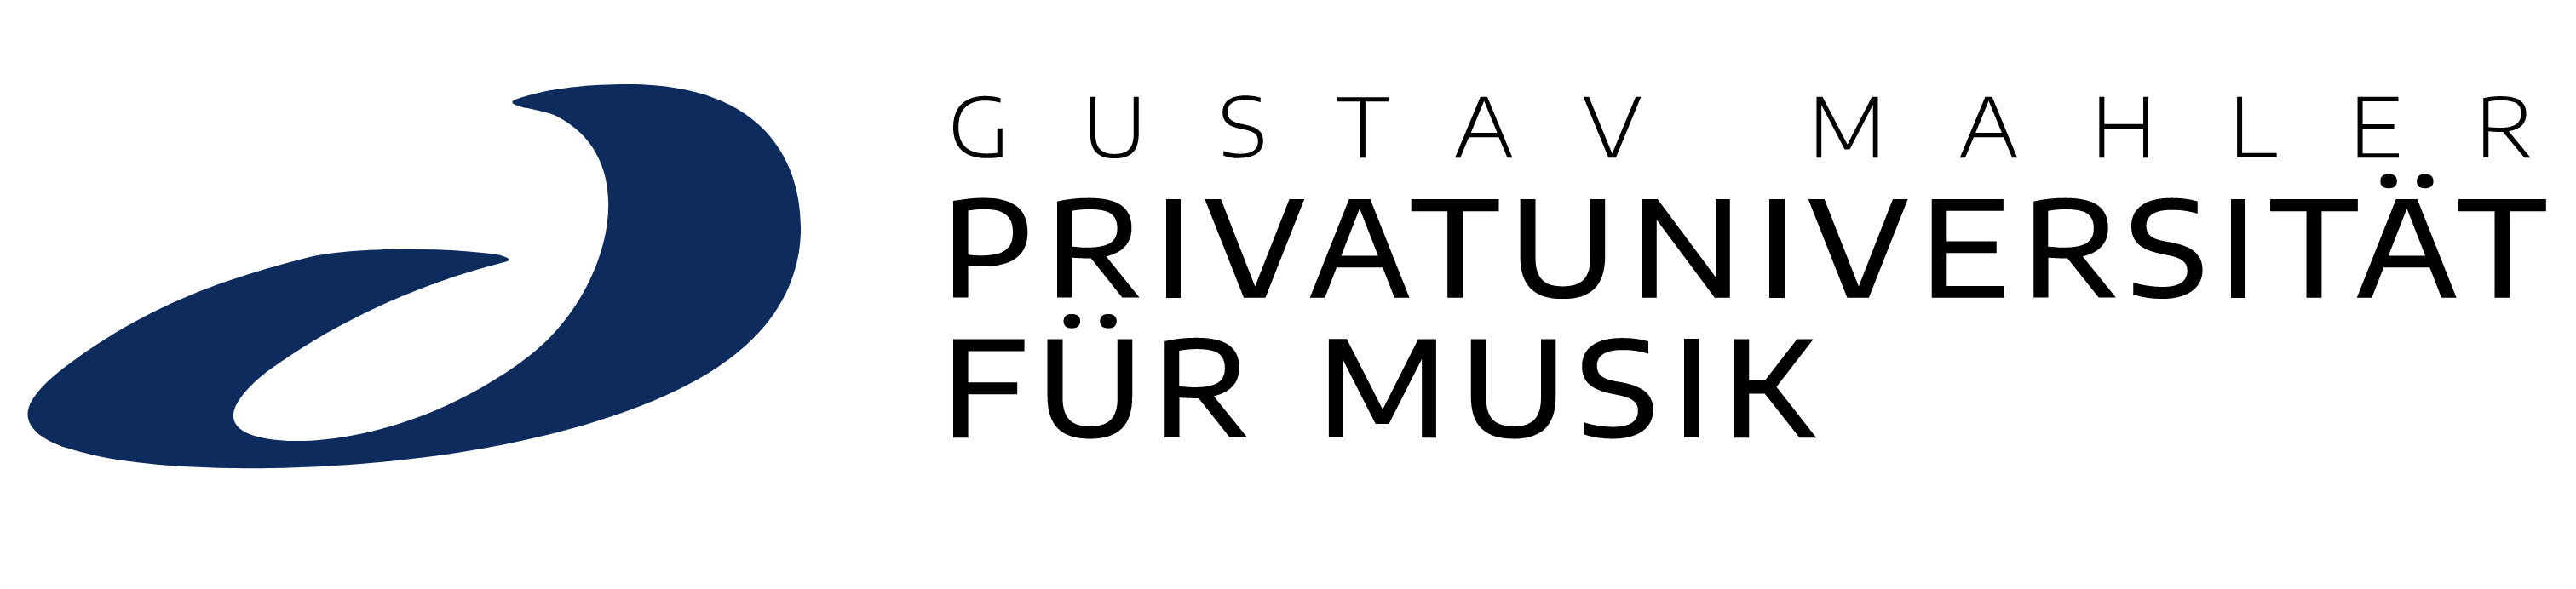 Gustav Mahler Privatuniversität Für Musik, Klagenfurt